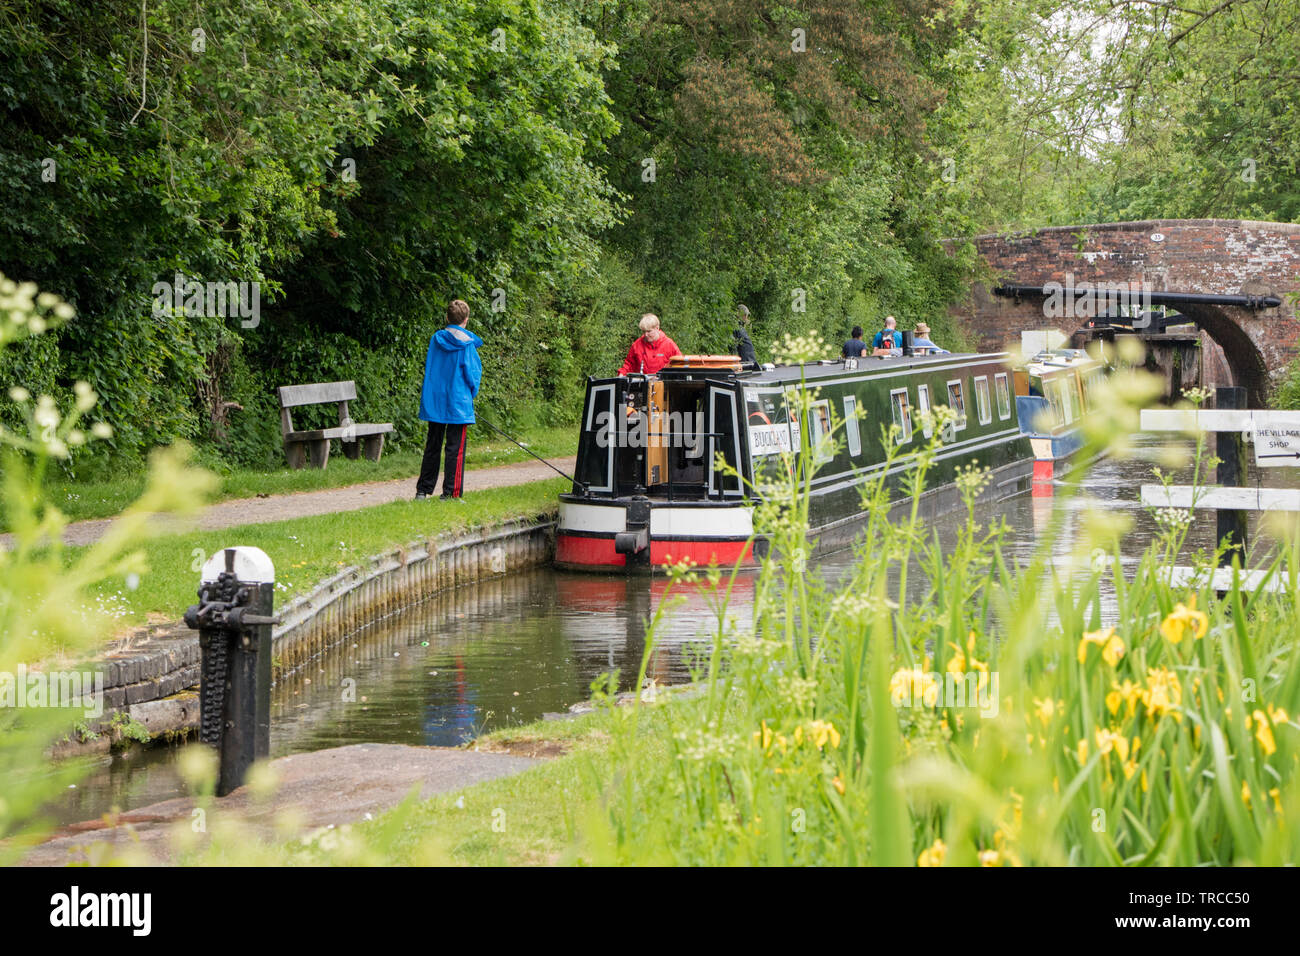 Stratford upon Avon Canal at Lapworth, Warwickshire, England, UK Stock Photo